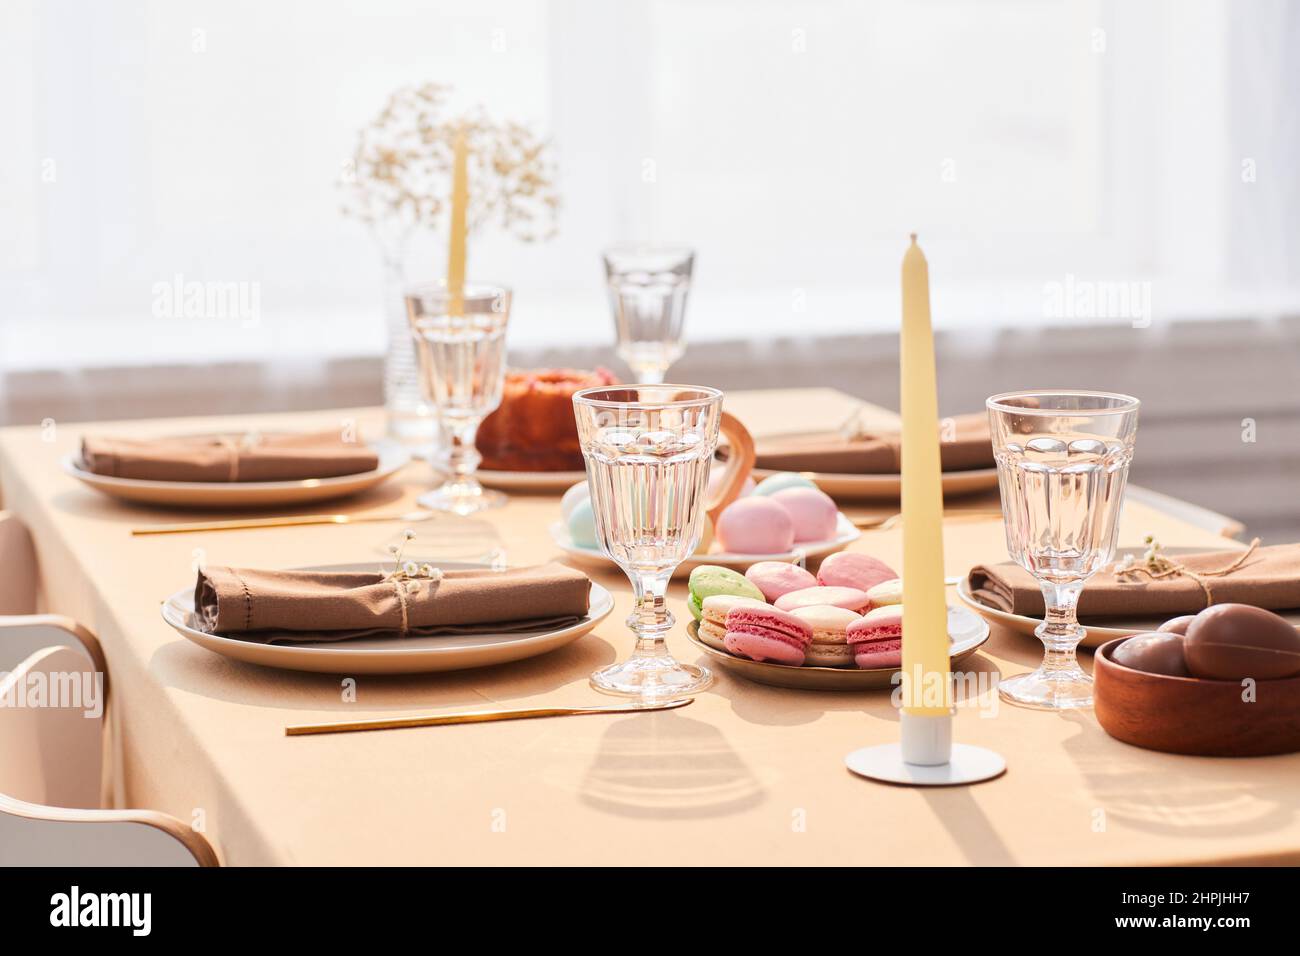 Imagen de fondo de elegante mesa de cena decorada para Pascua en tonos suaves y aireados, espacio de copia Foto de stock